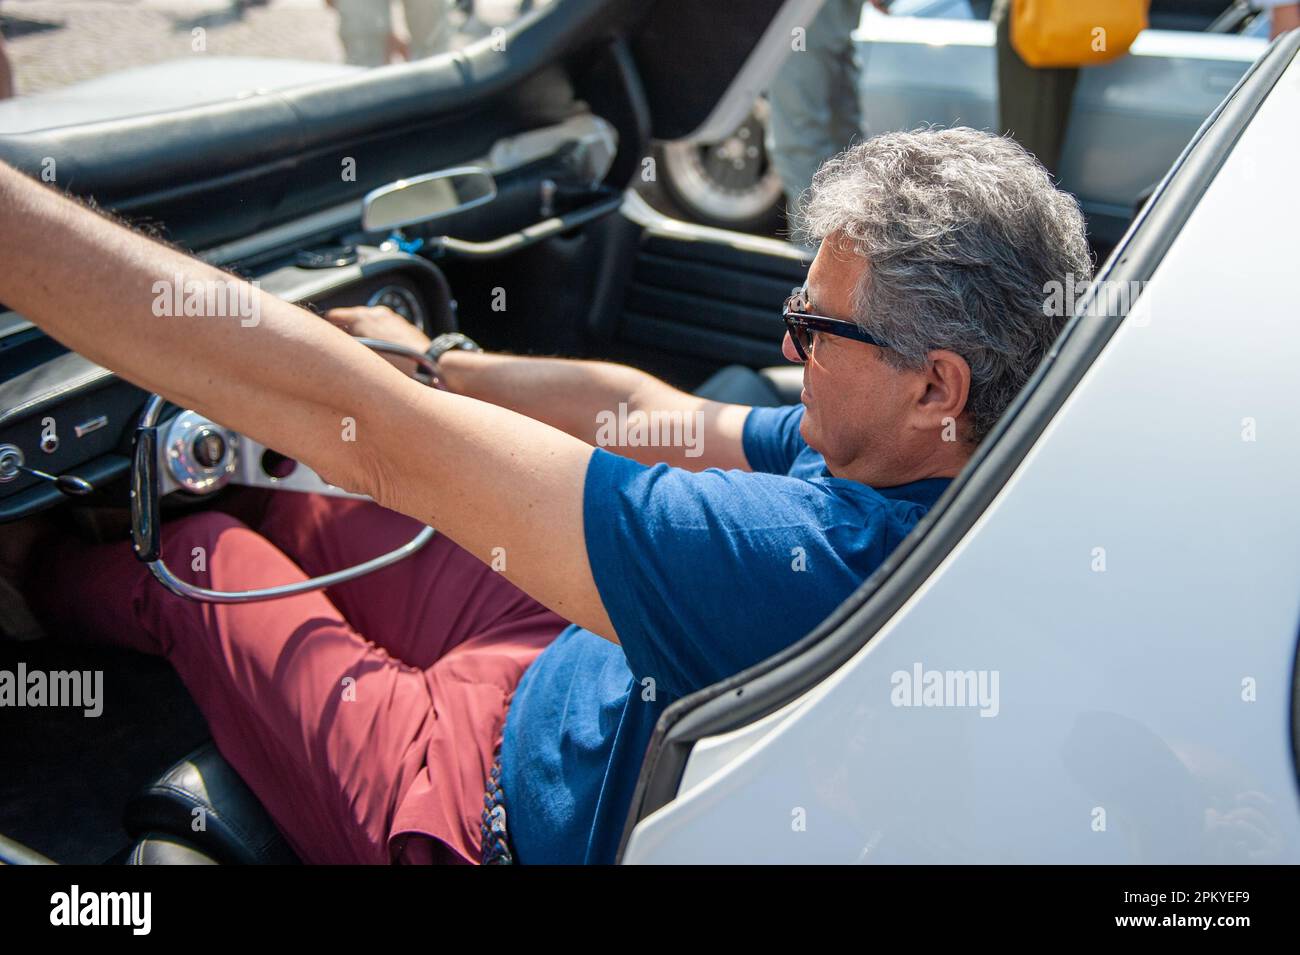 06/22/2019 Turin (Italy) Fabrizio Giugiaro, son of Giorgetto, in the driver's seat of the Chevrolet Corvair Testudo Stock Photo